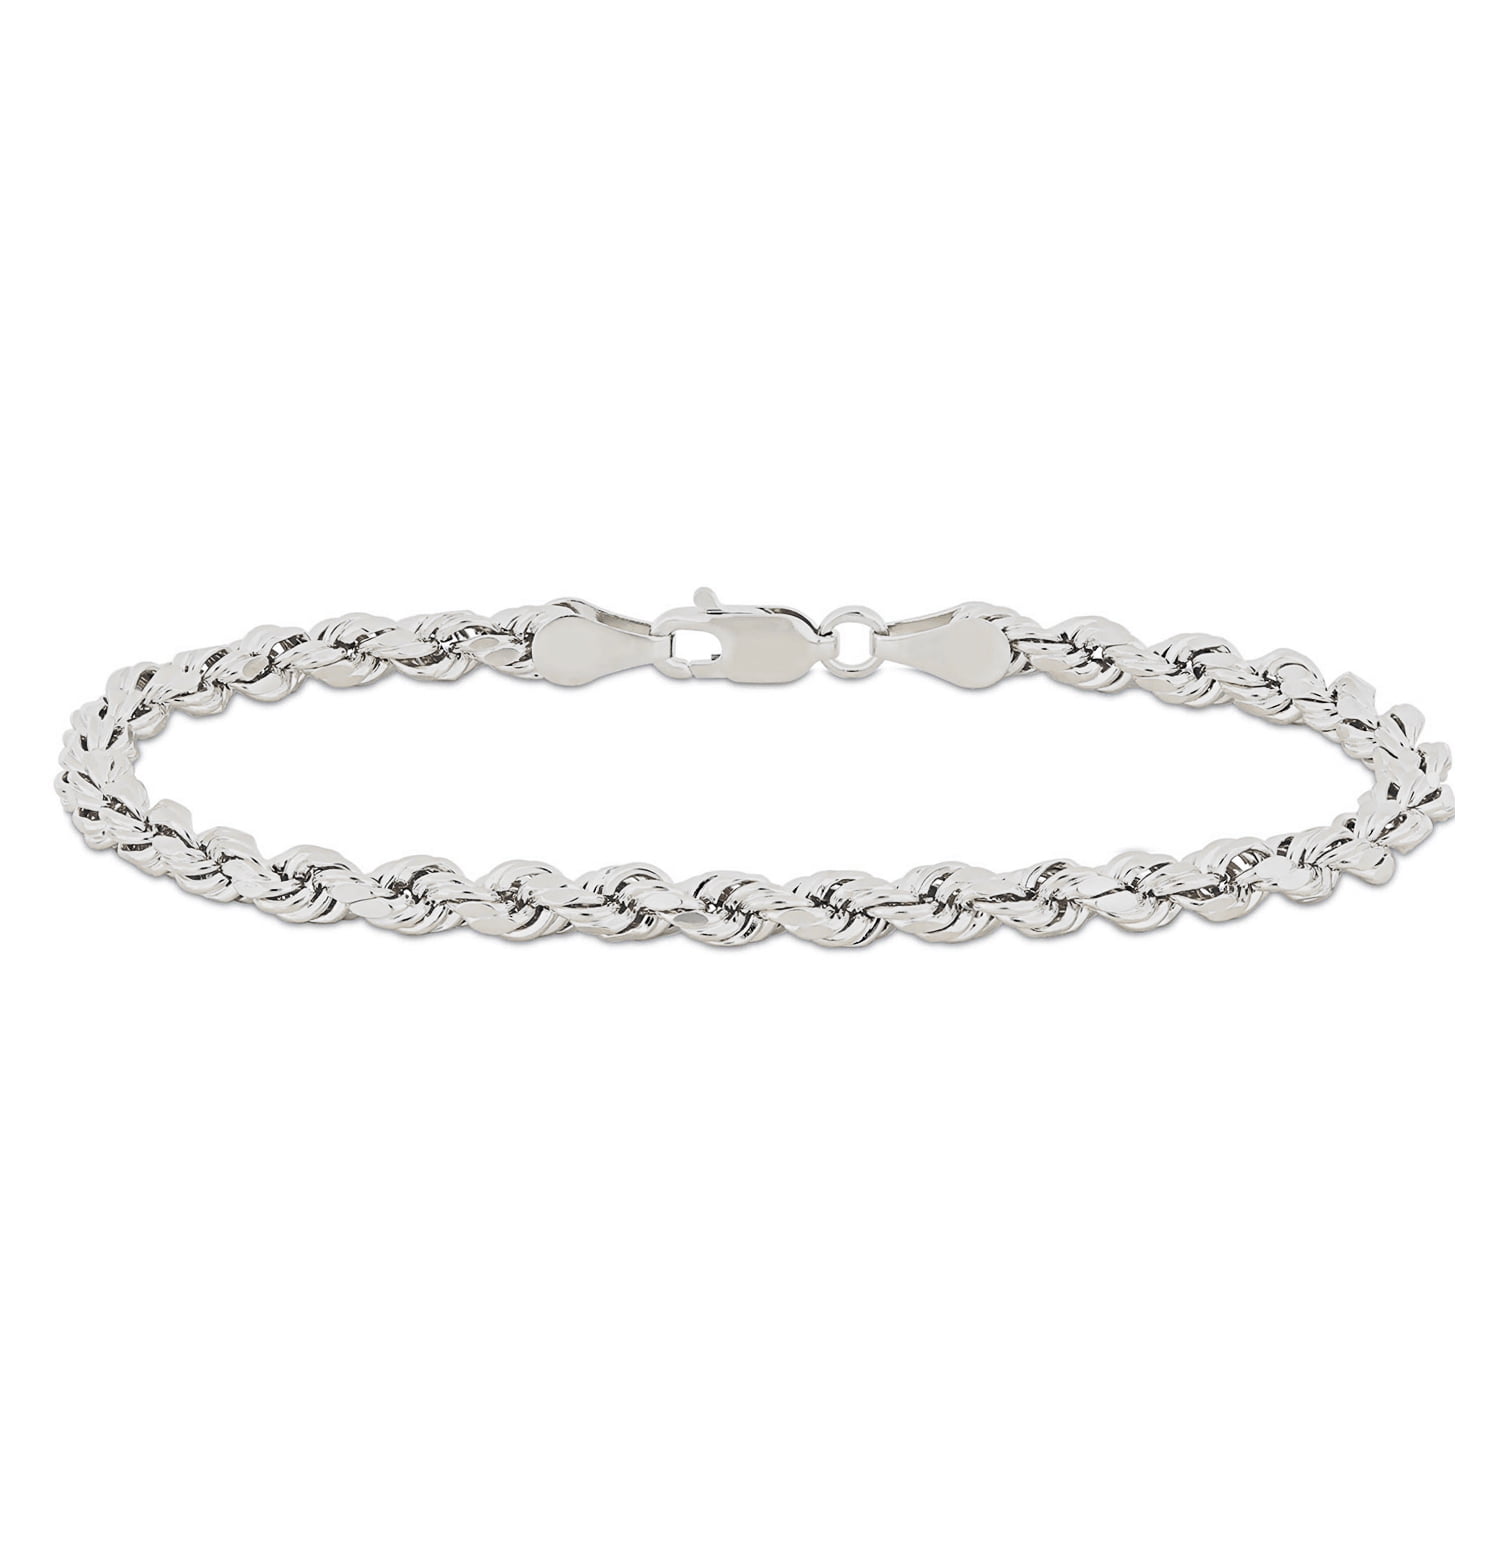 4mm Tiny Blessings Beads, Baby/Children's Name Bracelet for Girls -  Sterling Silver